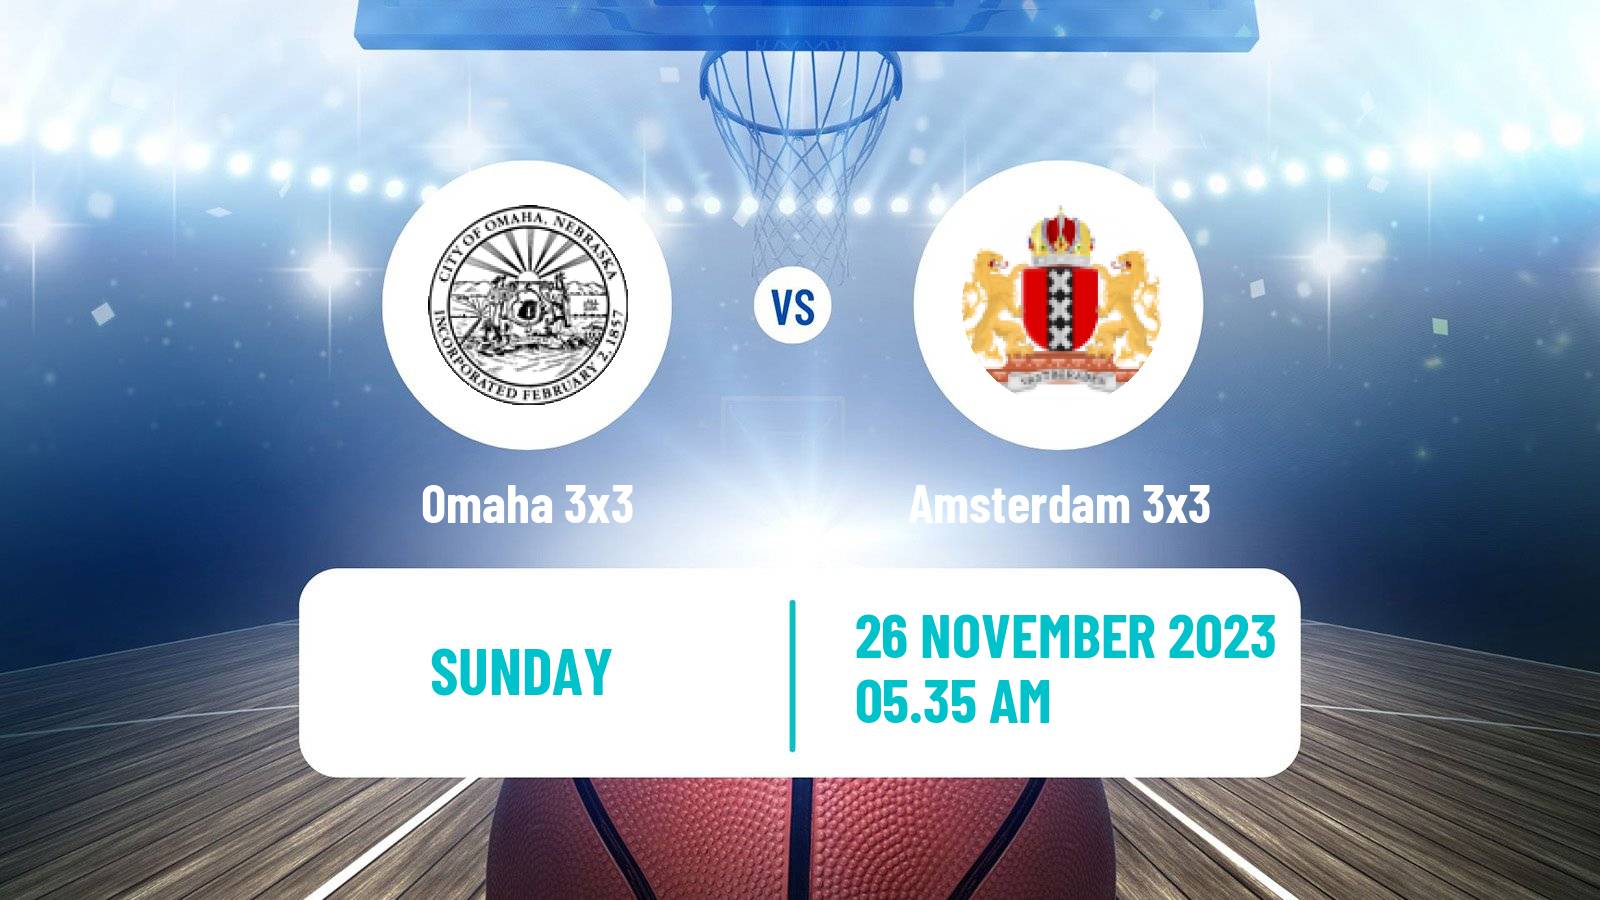 Basketball World Tour Hong Kong 3x3 Omaha 3x3 - Amsterdam 3x3